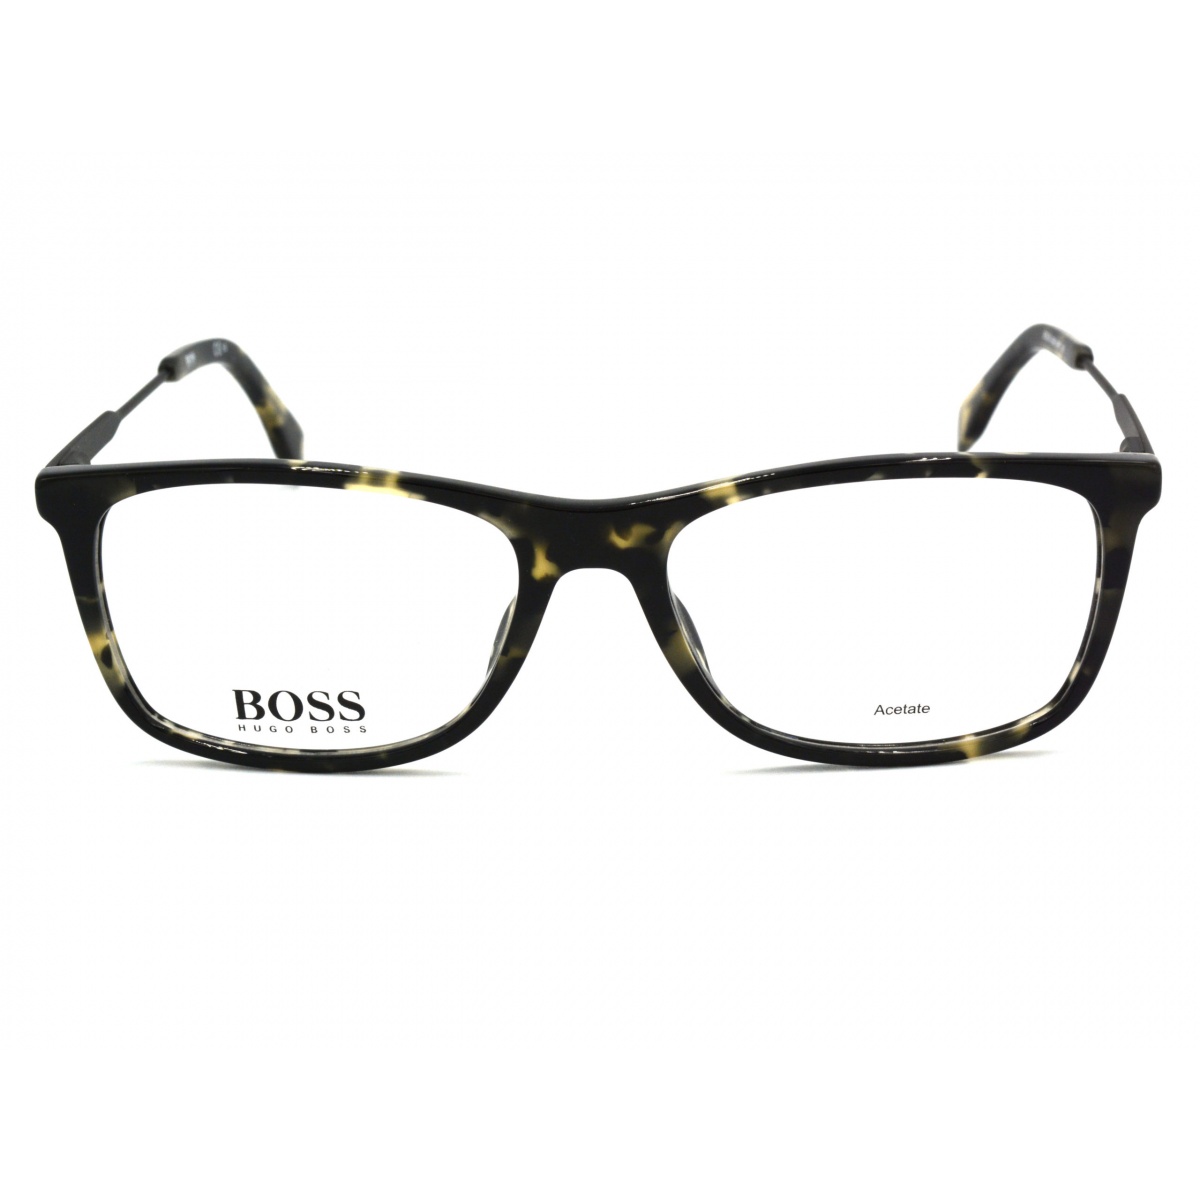 Γυαλιά οράσεως HUGO BOSS 0996 WR7 145 Πειραιάς